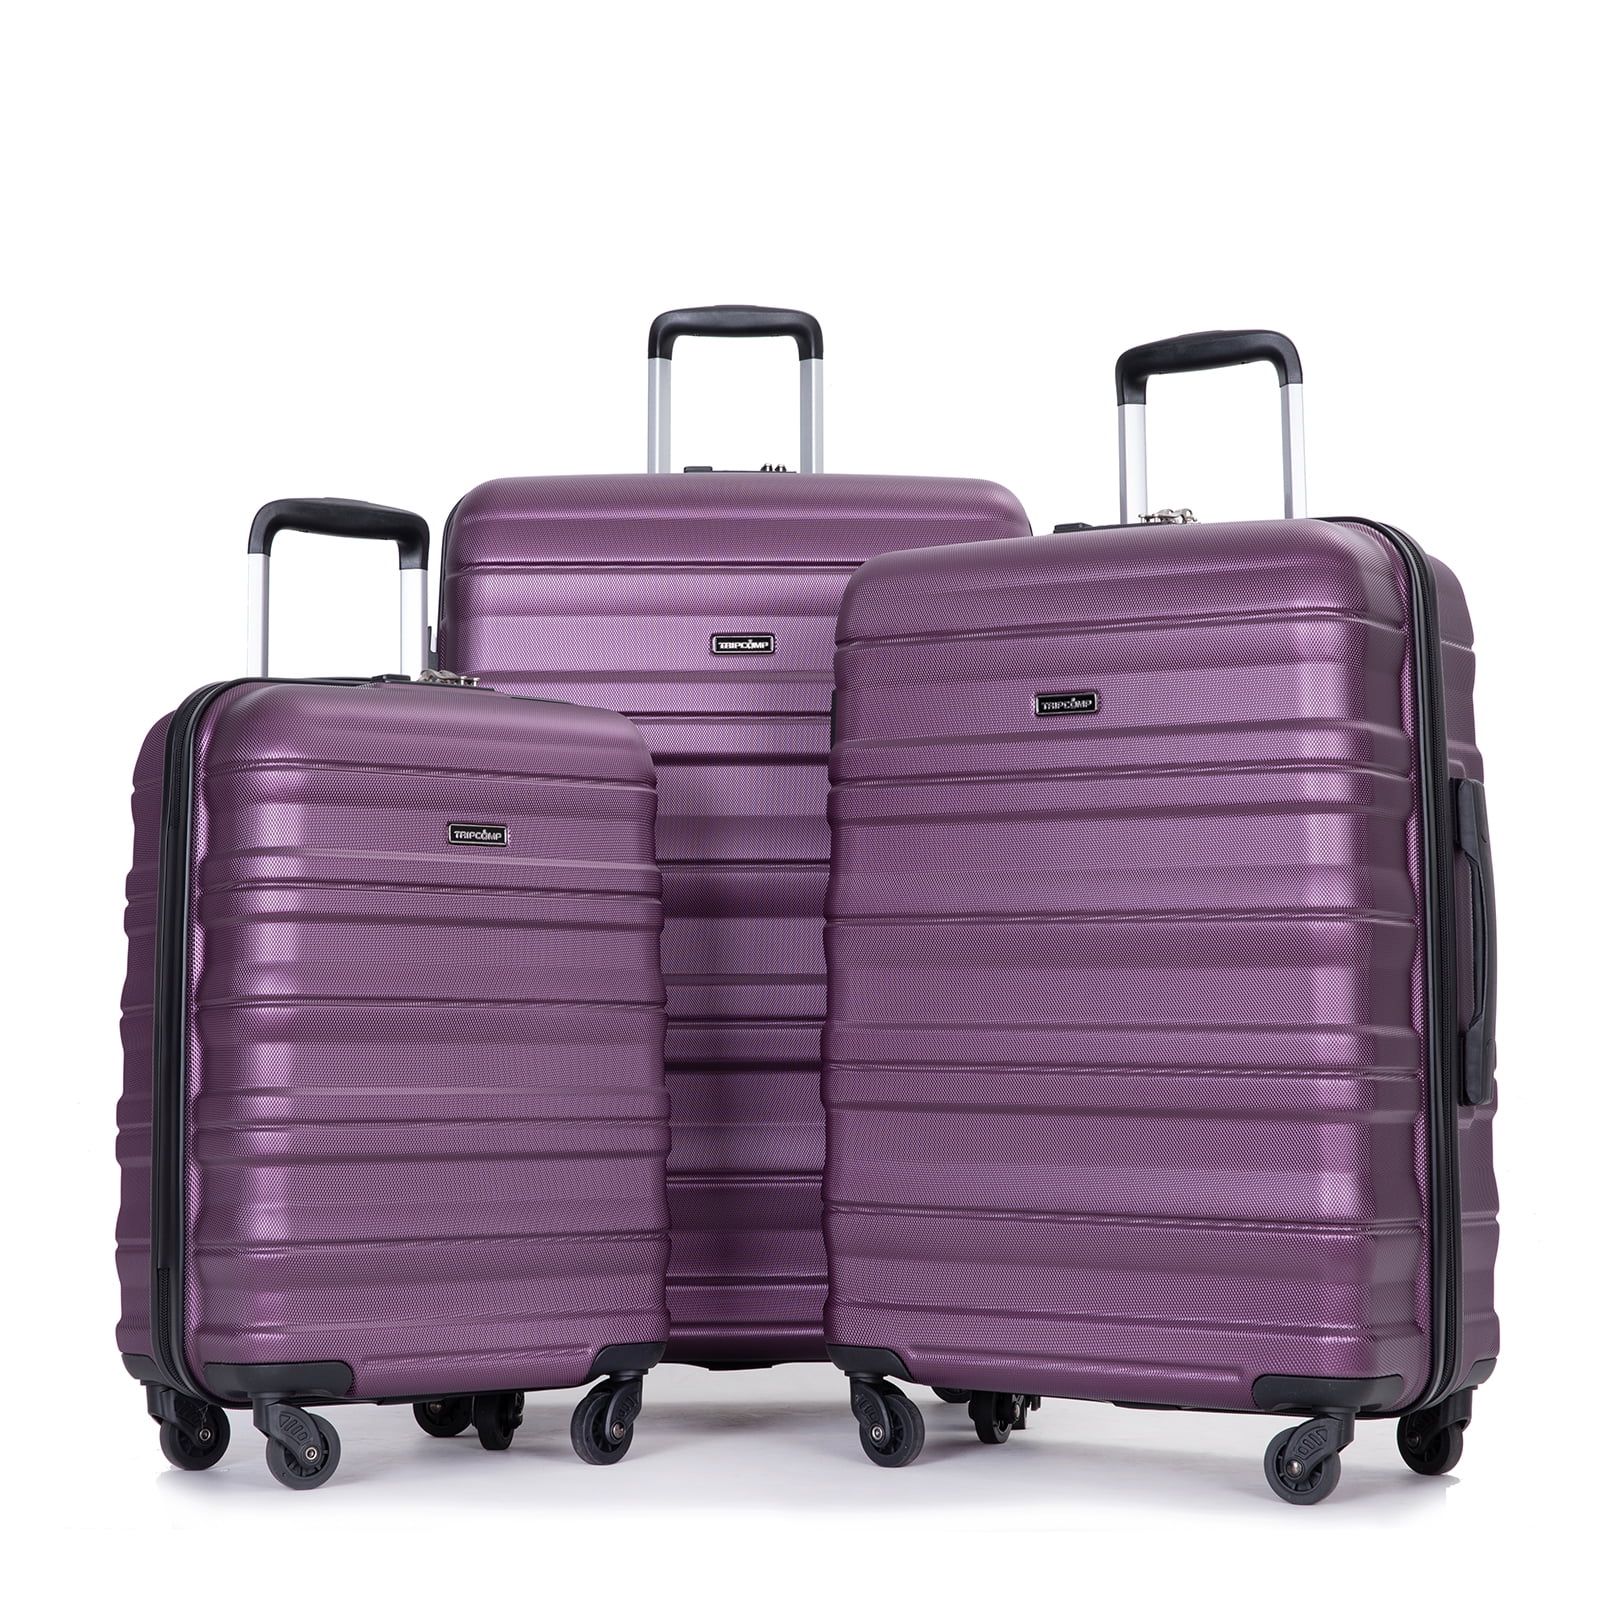 Tripcomp Hardside Luggage Set 3-Piece Set(21/25/29) Lightweight Suitcase 4-Wheeled Travel Case(Da... | Walmart (US)